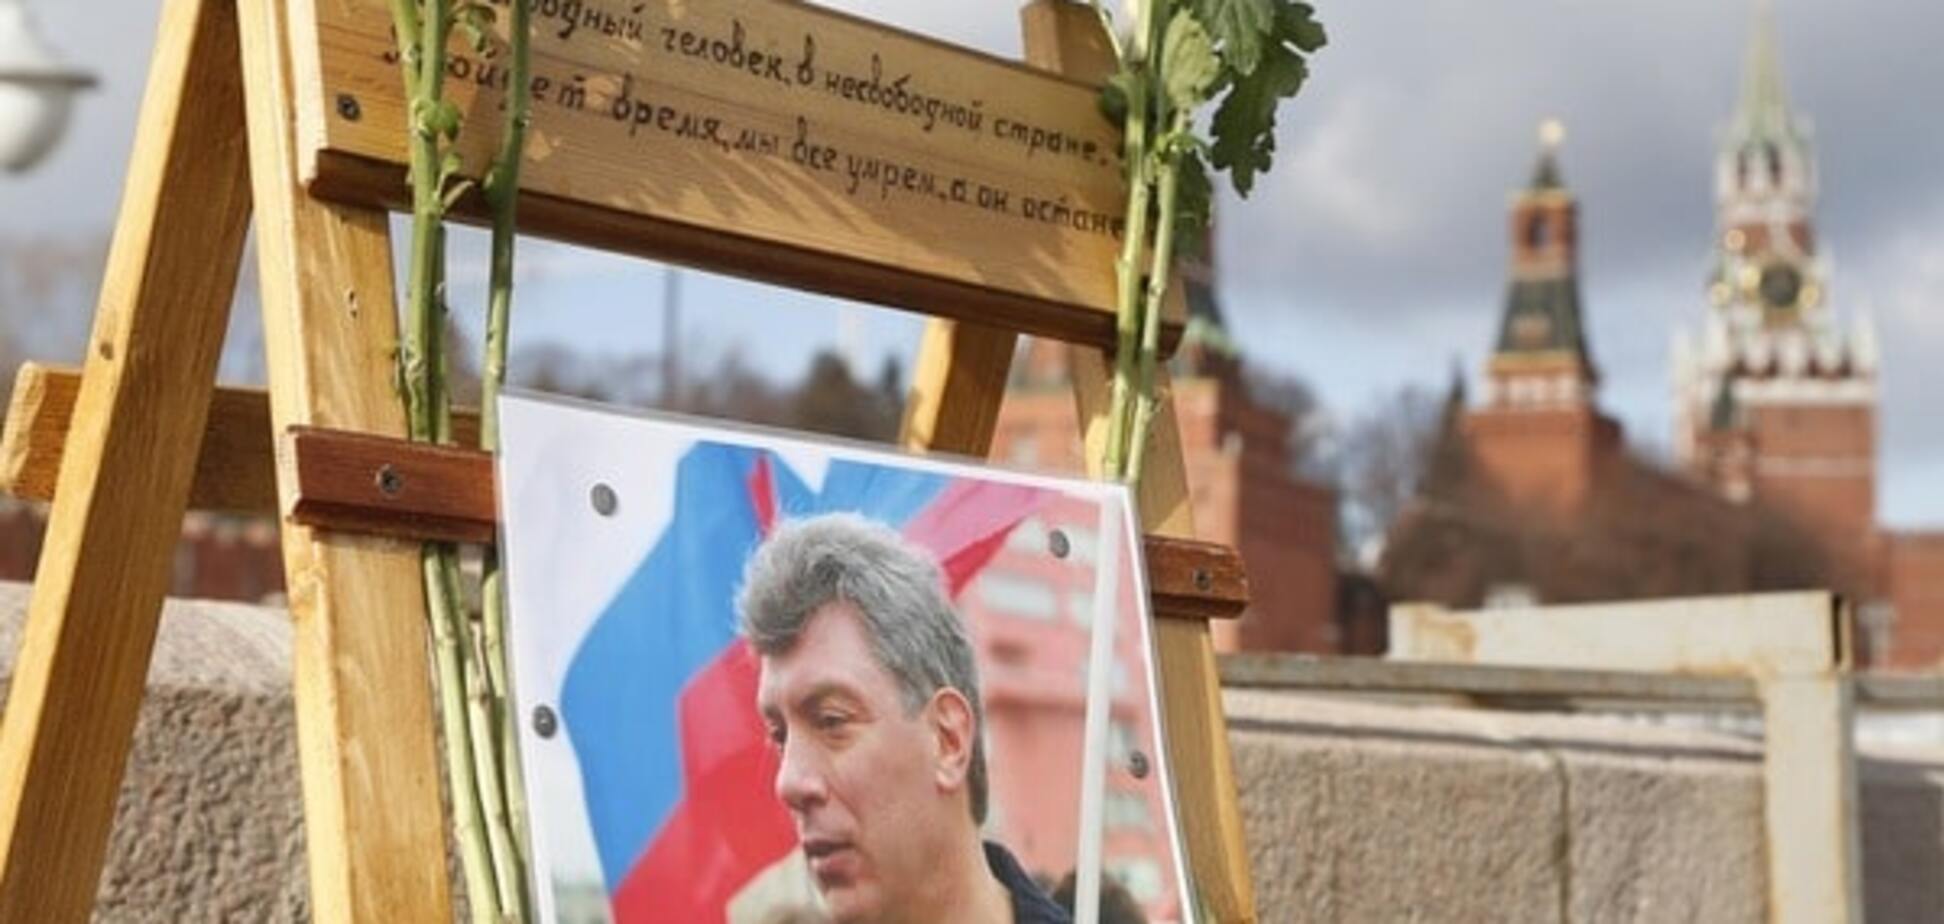 'Він шльопнутий': Сотник припустив, що Нємцова вбили за мат на адресу Путіна